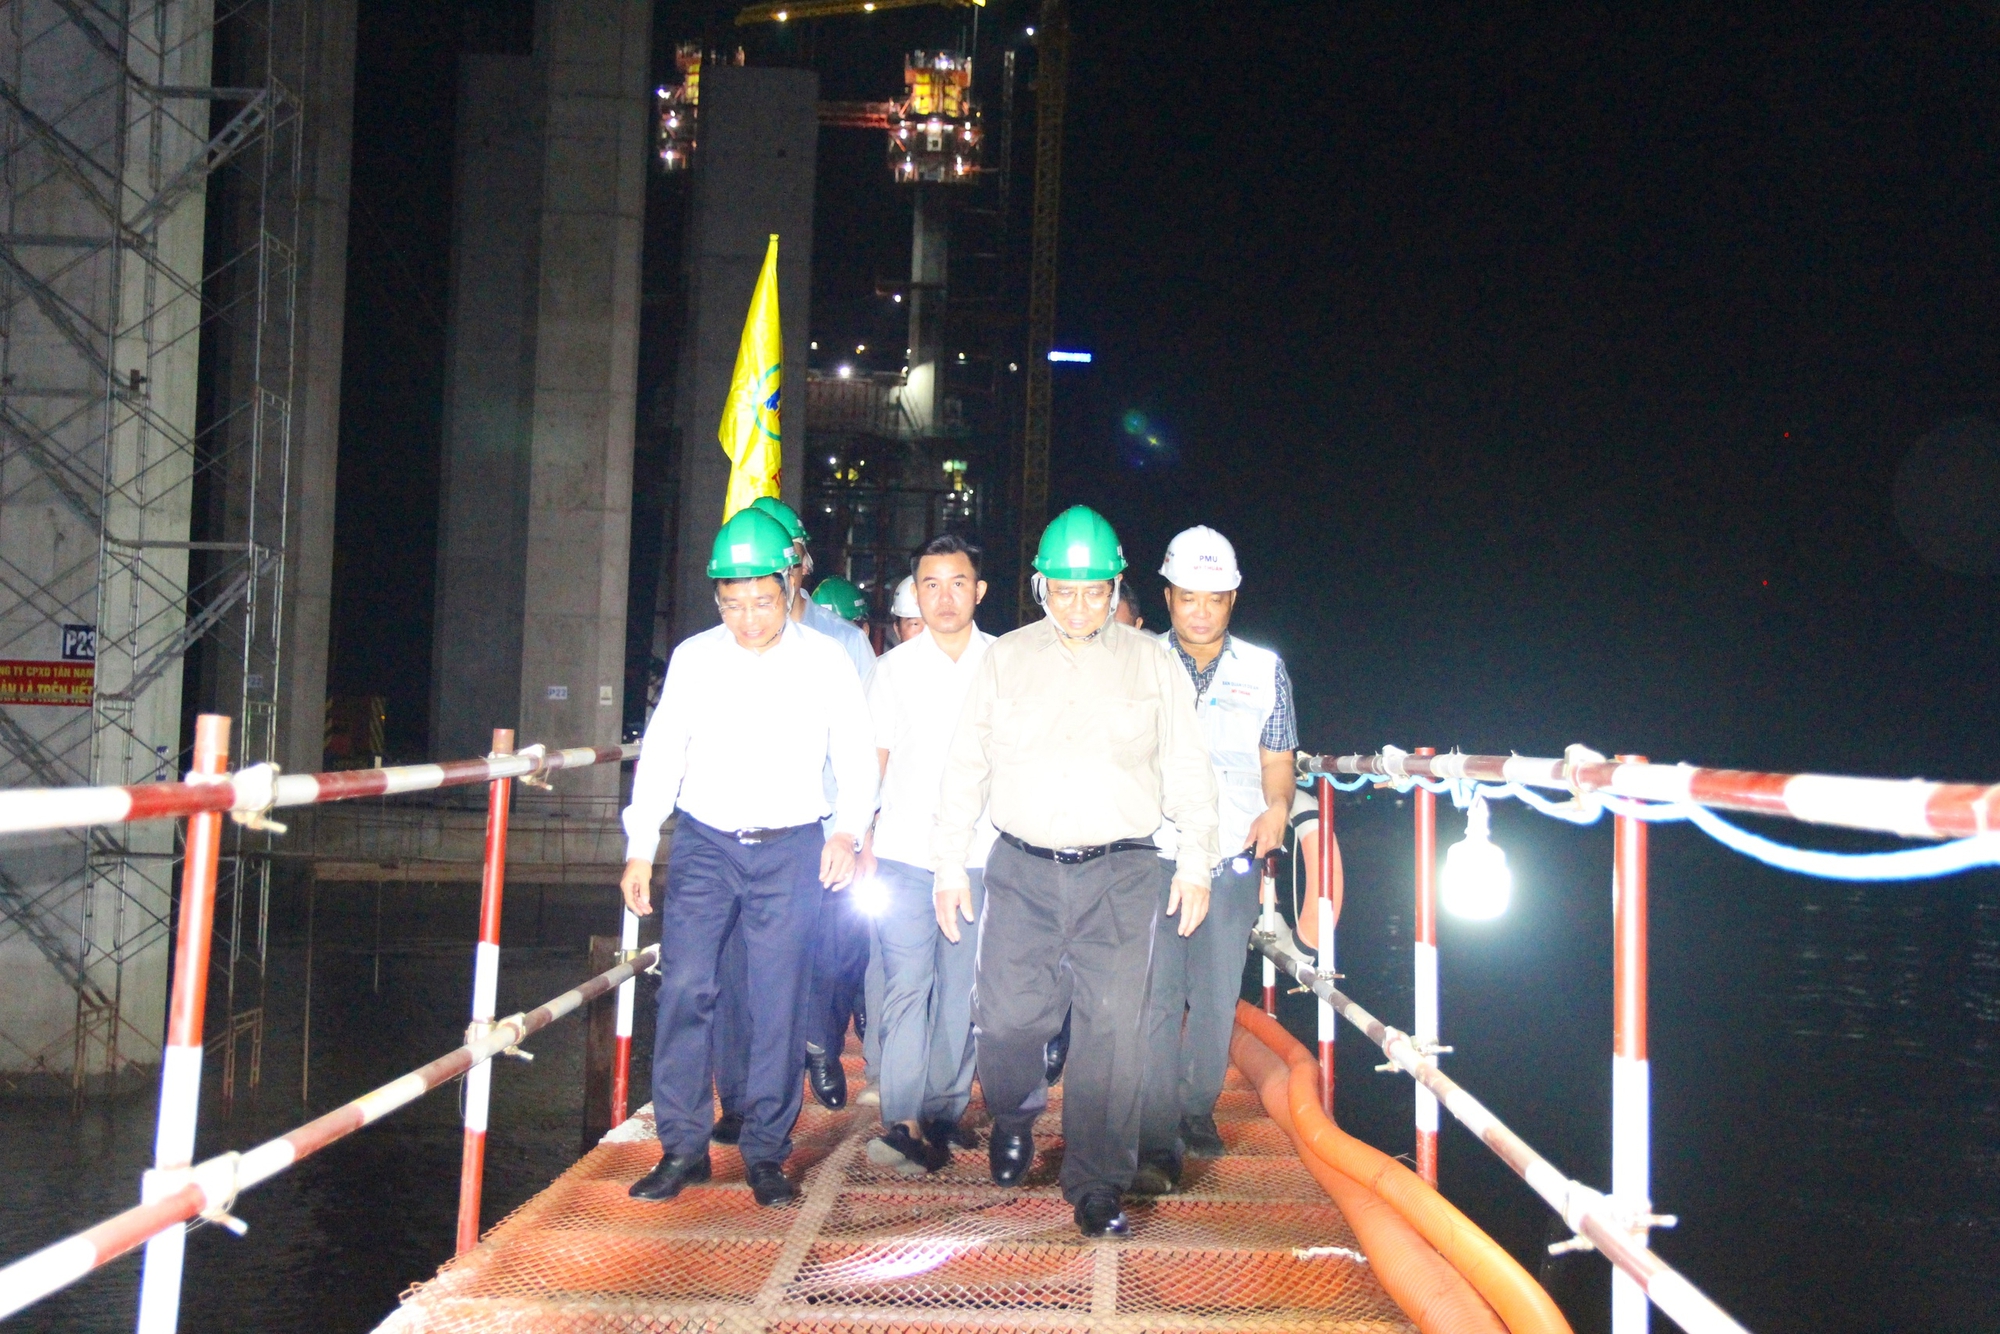 Chùm ảnh Thủ tướng Phạm Minh Chính kiểm tra cầu Rạch Miễu 2 trong đêm- Ảnh 6.